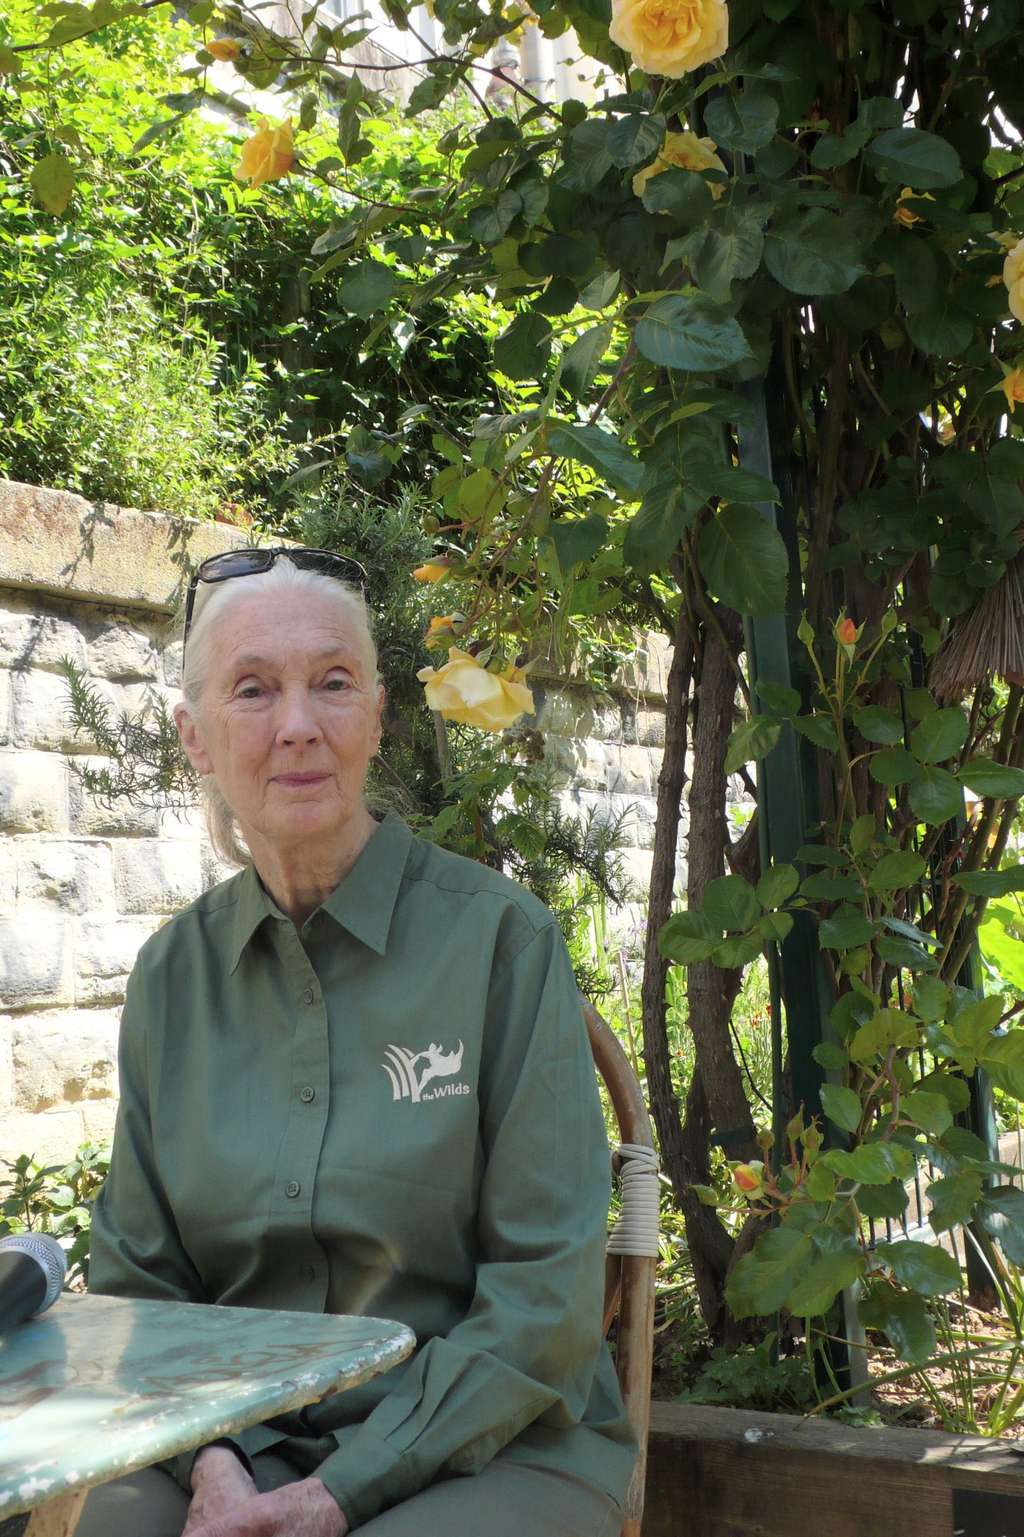 Jane Goodall, le 18 mai 2014, fait une pause à Paris, dans le jardin du Ruisseau, où l'on fleurit une partie de l'ancienne ligne de train dite de la Petite Ceinture. La Britannique vient y rencontrer des membres français de son institut. © Jean-Luc Goudet, Futura-Sciences